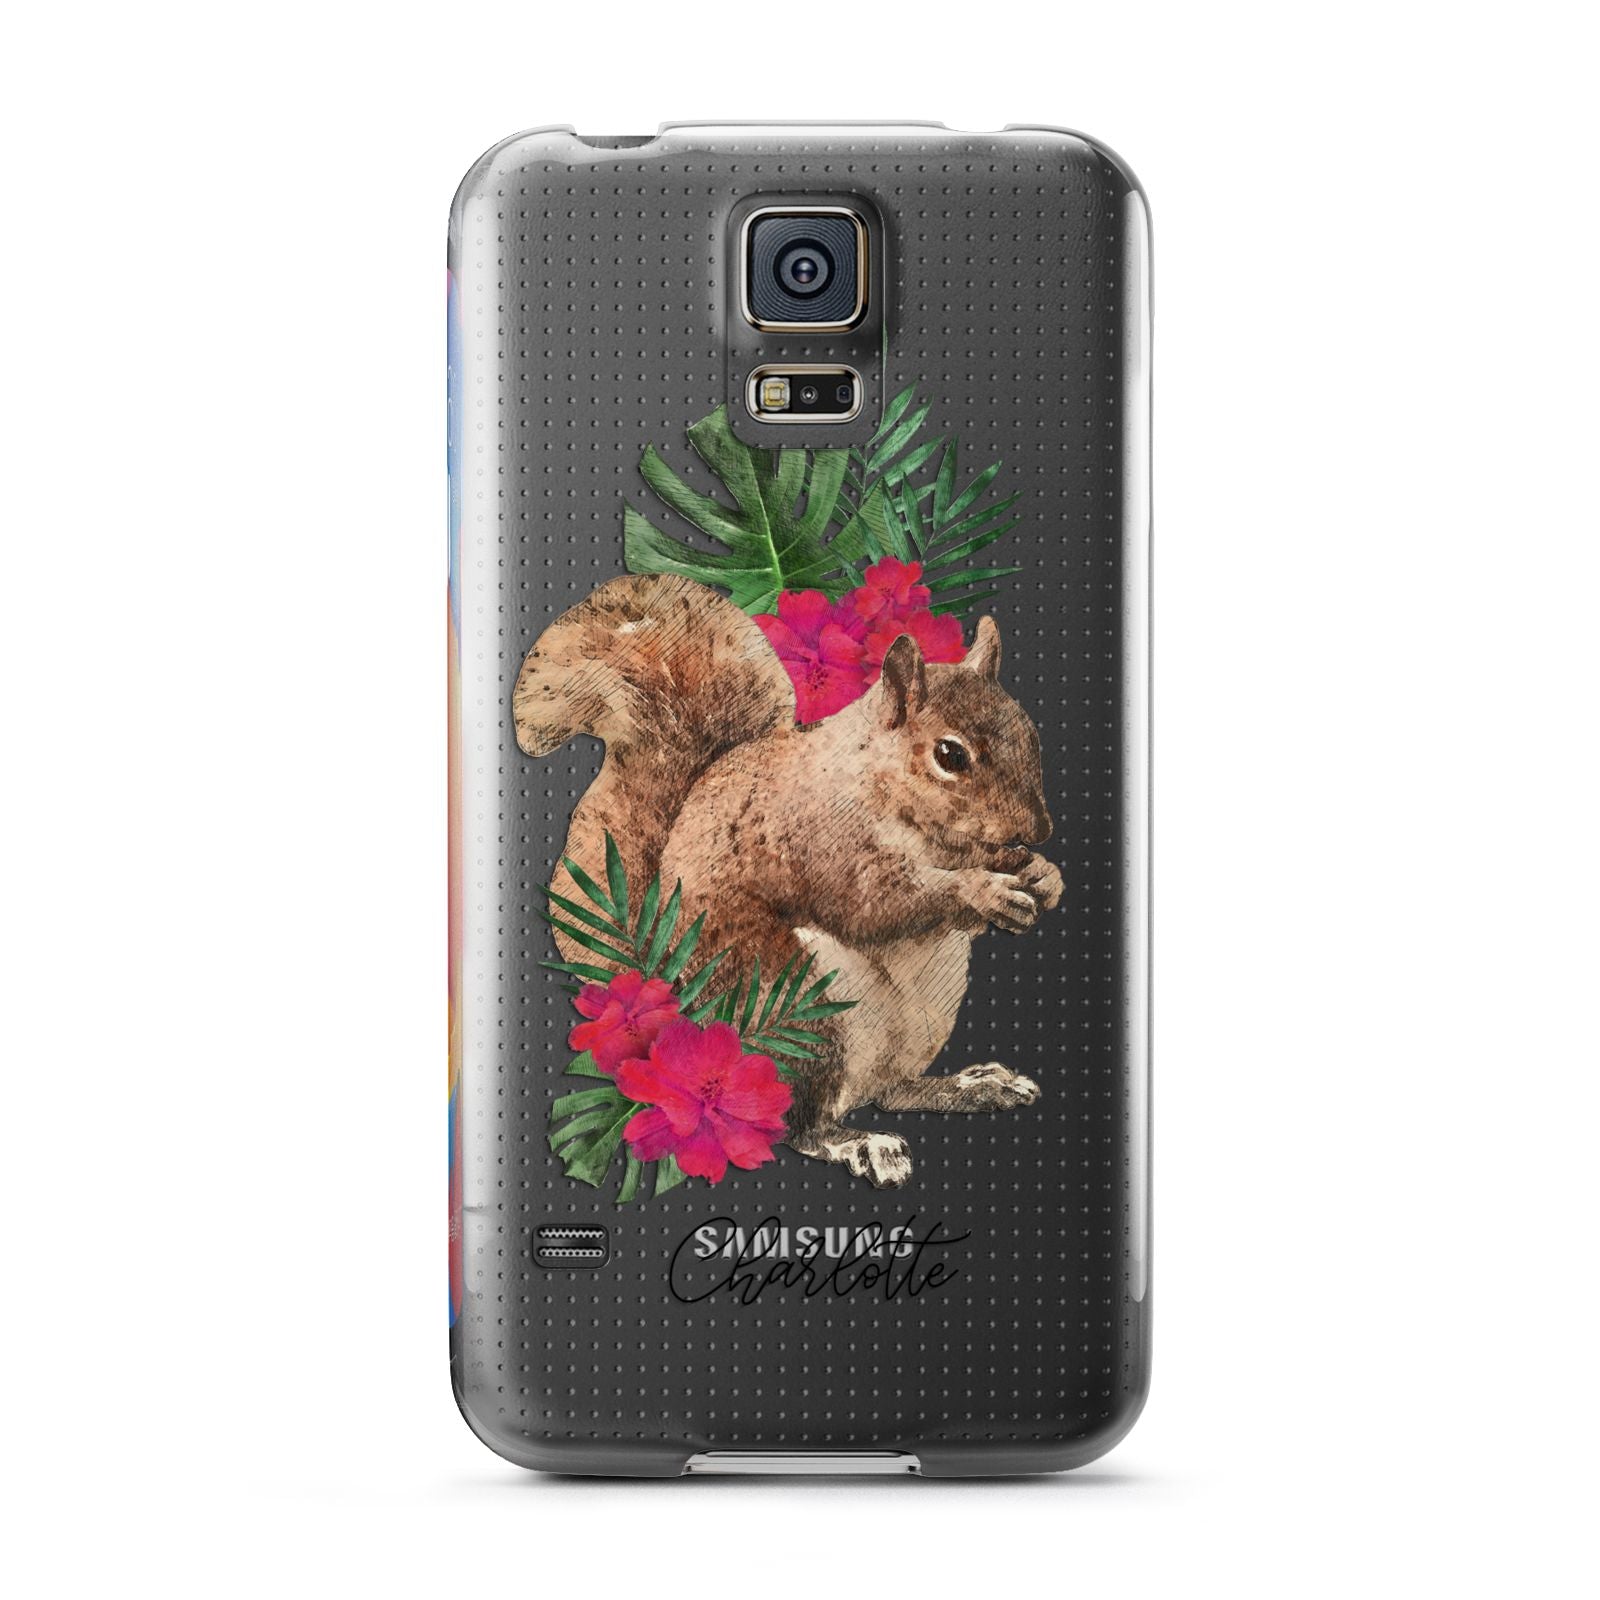 Personalised Squirrel Samsung Galaxy S5 Case